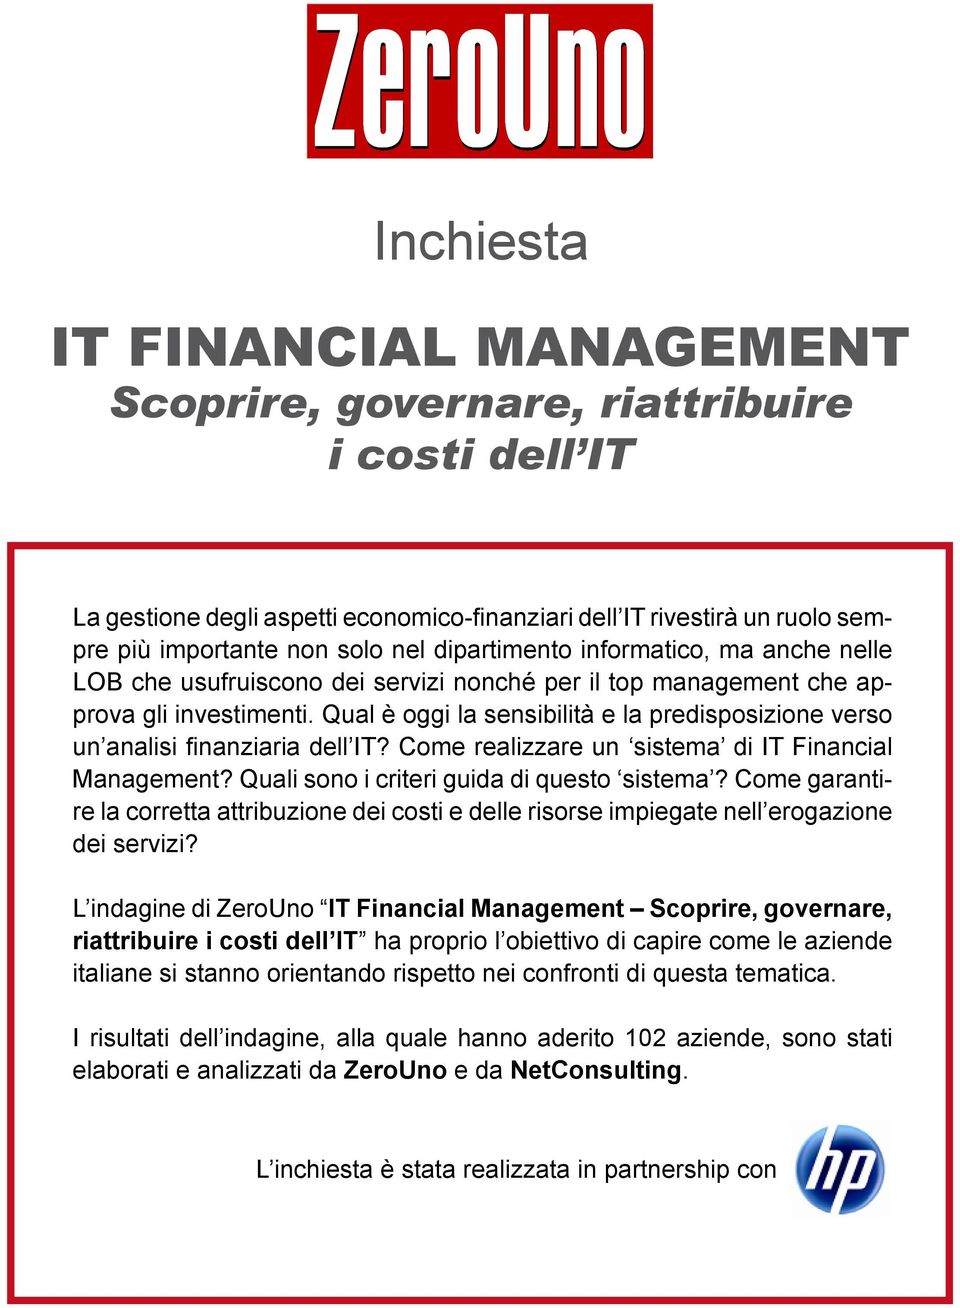 Qual è oggi la sensibilità e la predisposizione verso un analisi finanziaria dell IT? Come realizzare un sistema di IT Financial Management? Quali sono i criteri guida di questo sistema?